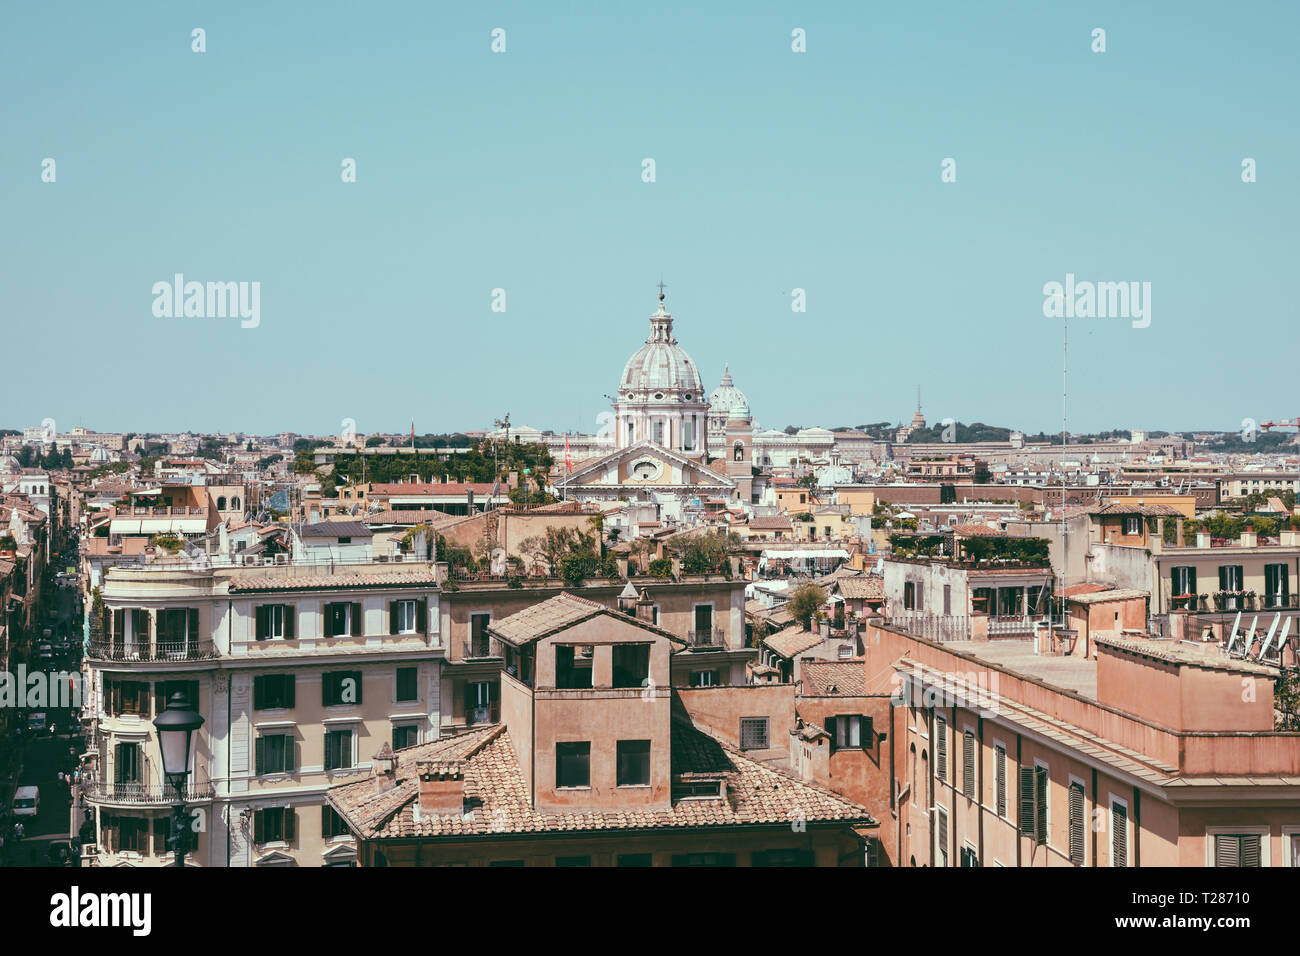 Panoramablick auf die Stadt Rom mit alten Häusern, von der Spanischen Treppe entfernt. Sommer Sonne und blauer Himmel Stockfoto